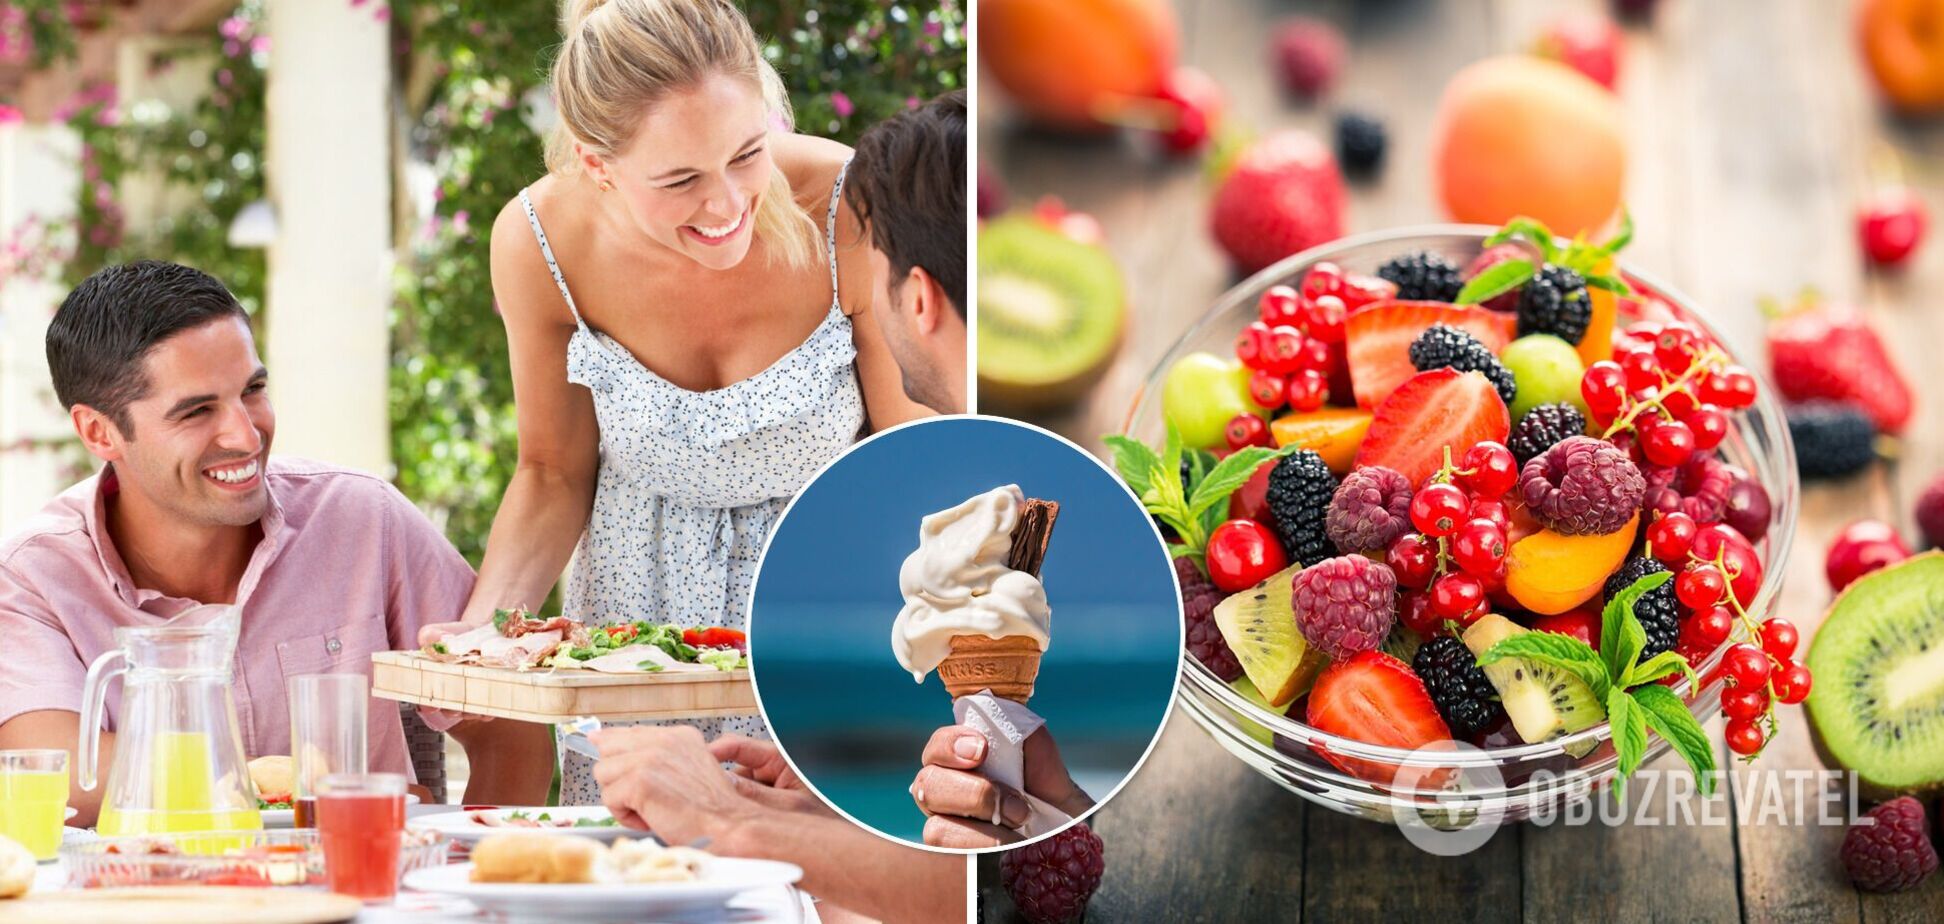 Що їсти влітку і які продукти небезпечні для організму. Розповідає нутриціологиня